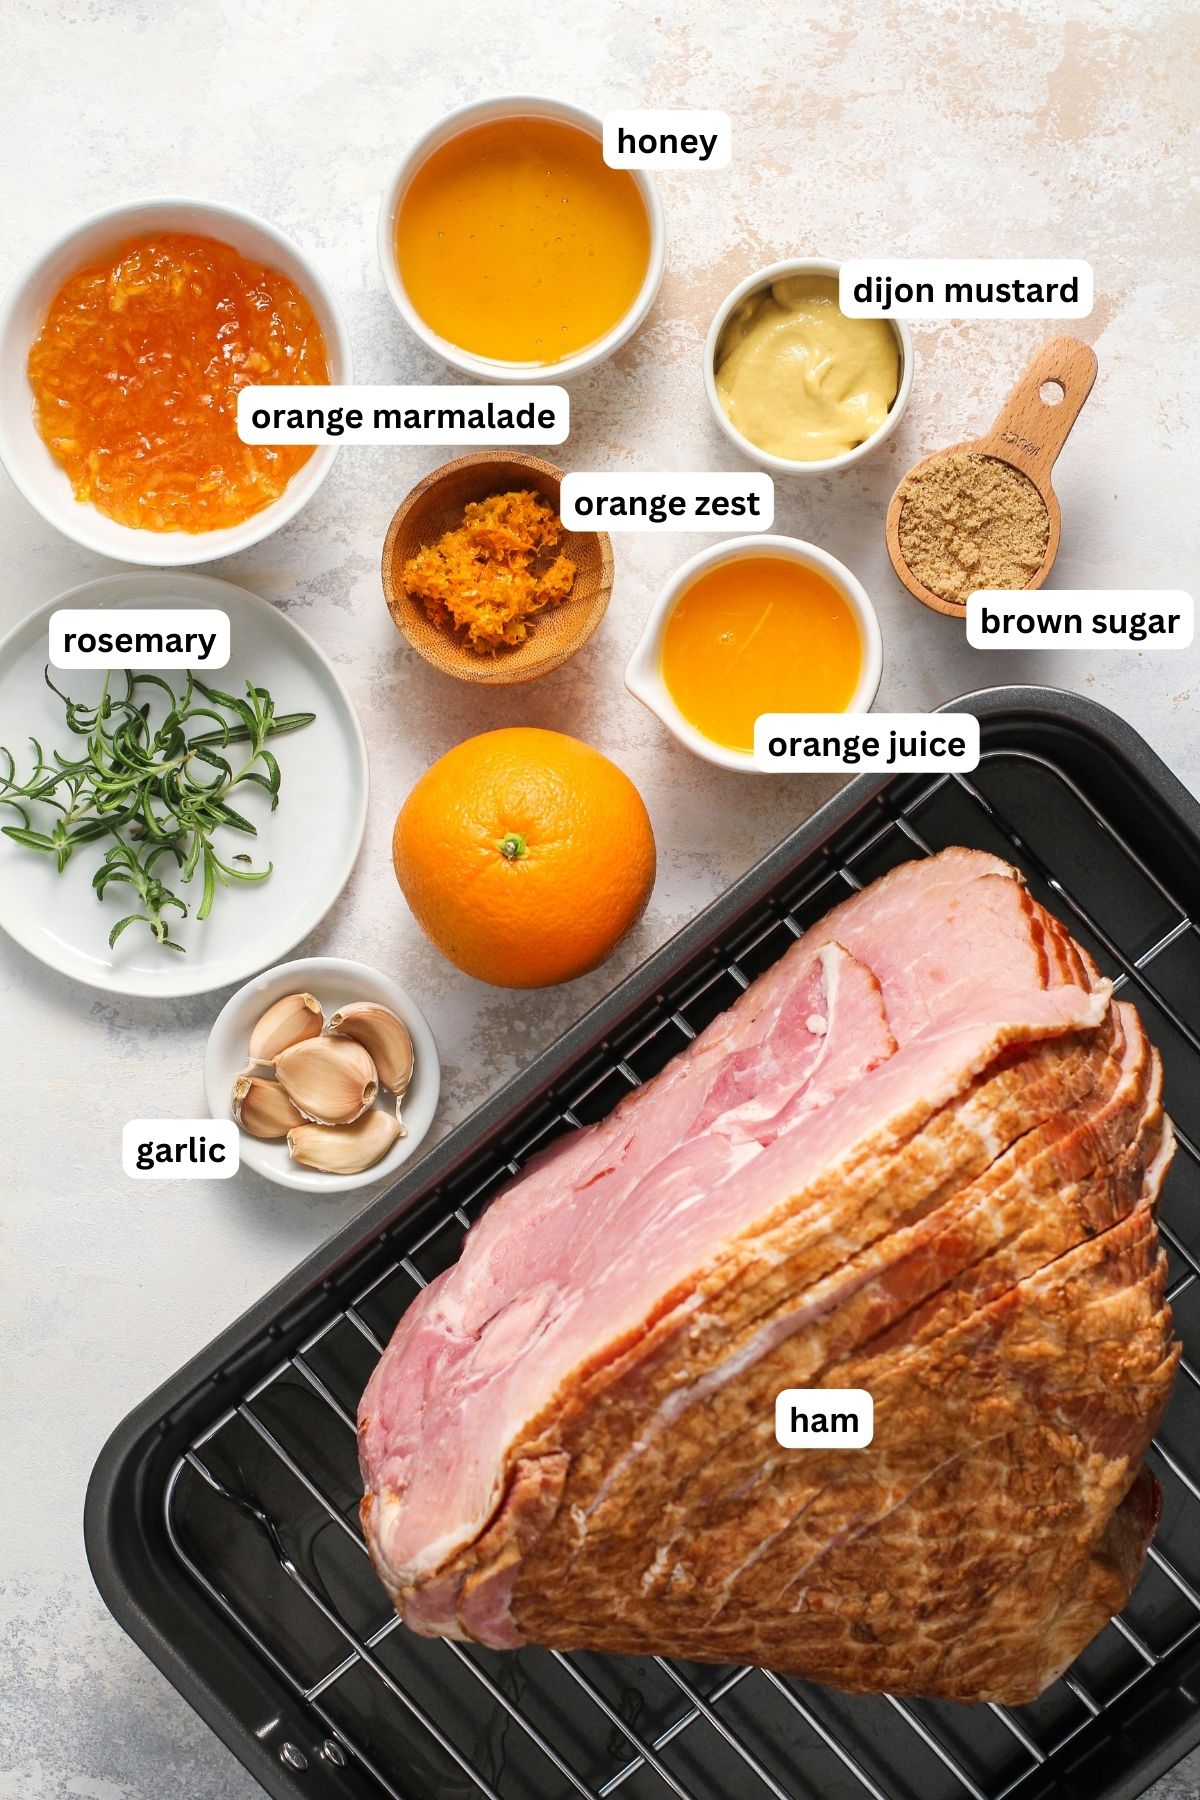 Orange glaze ham recipe ingredients arranged in bowls. From top to bottom: honey, orange marmalade, Dijon Mustard, orange zest, brown sugar, orange juice, rosemary, garlic and a spiral ham.